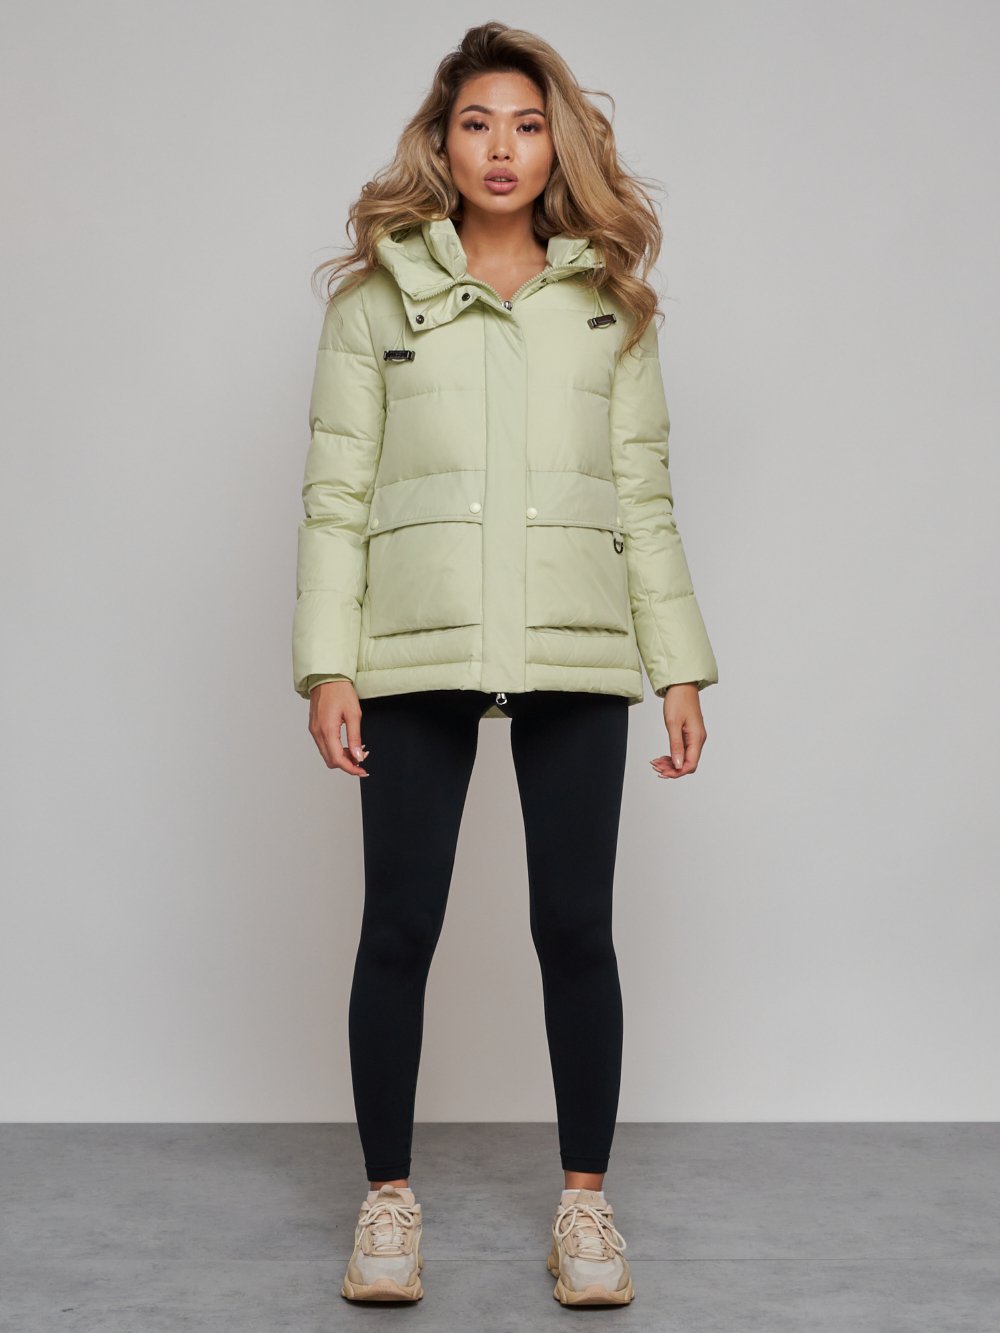 Купить куртку зимнюю оптом от производителя недорого в Москве 52303Sl 1